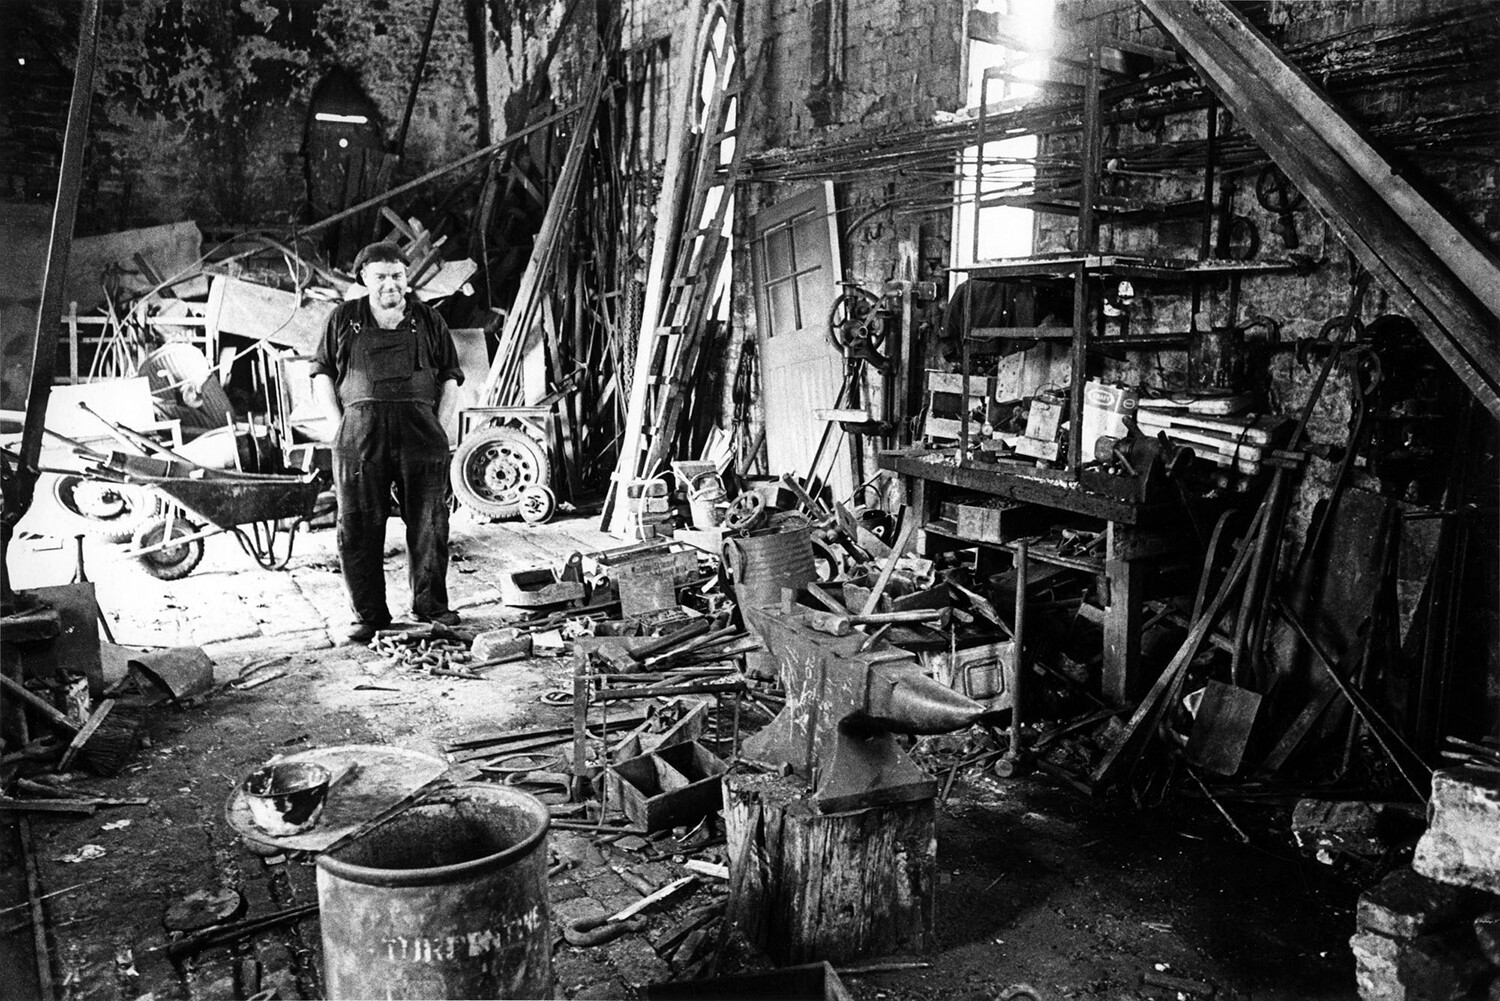 Кузнечная мастерская, Блэкридж, 1966. Фотограф Роберт Бломфилд